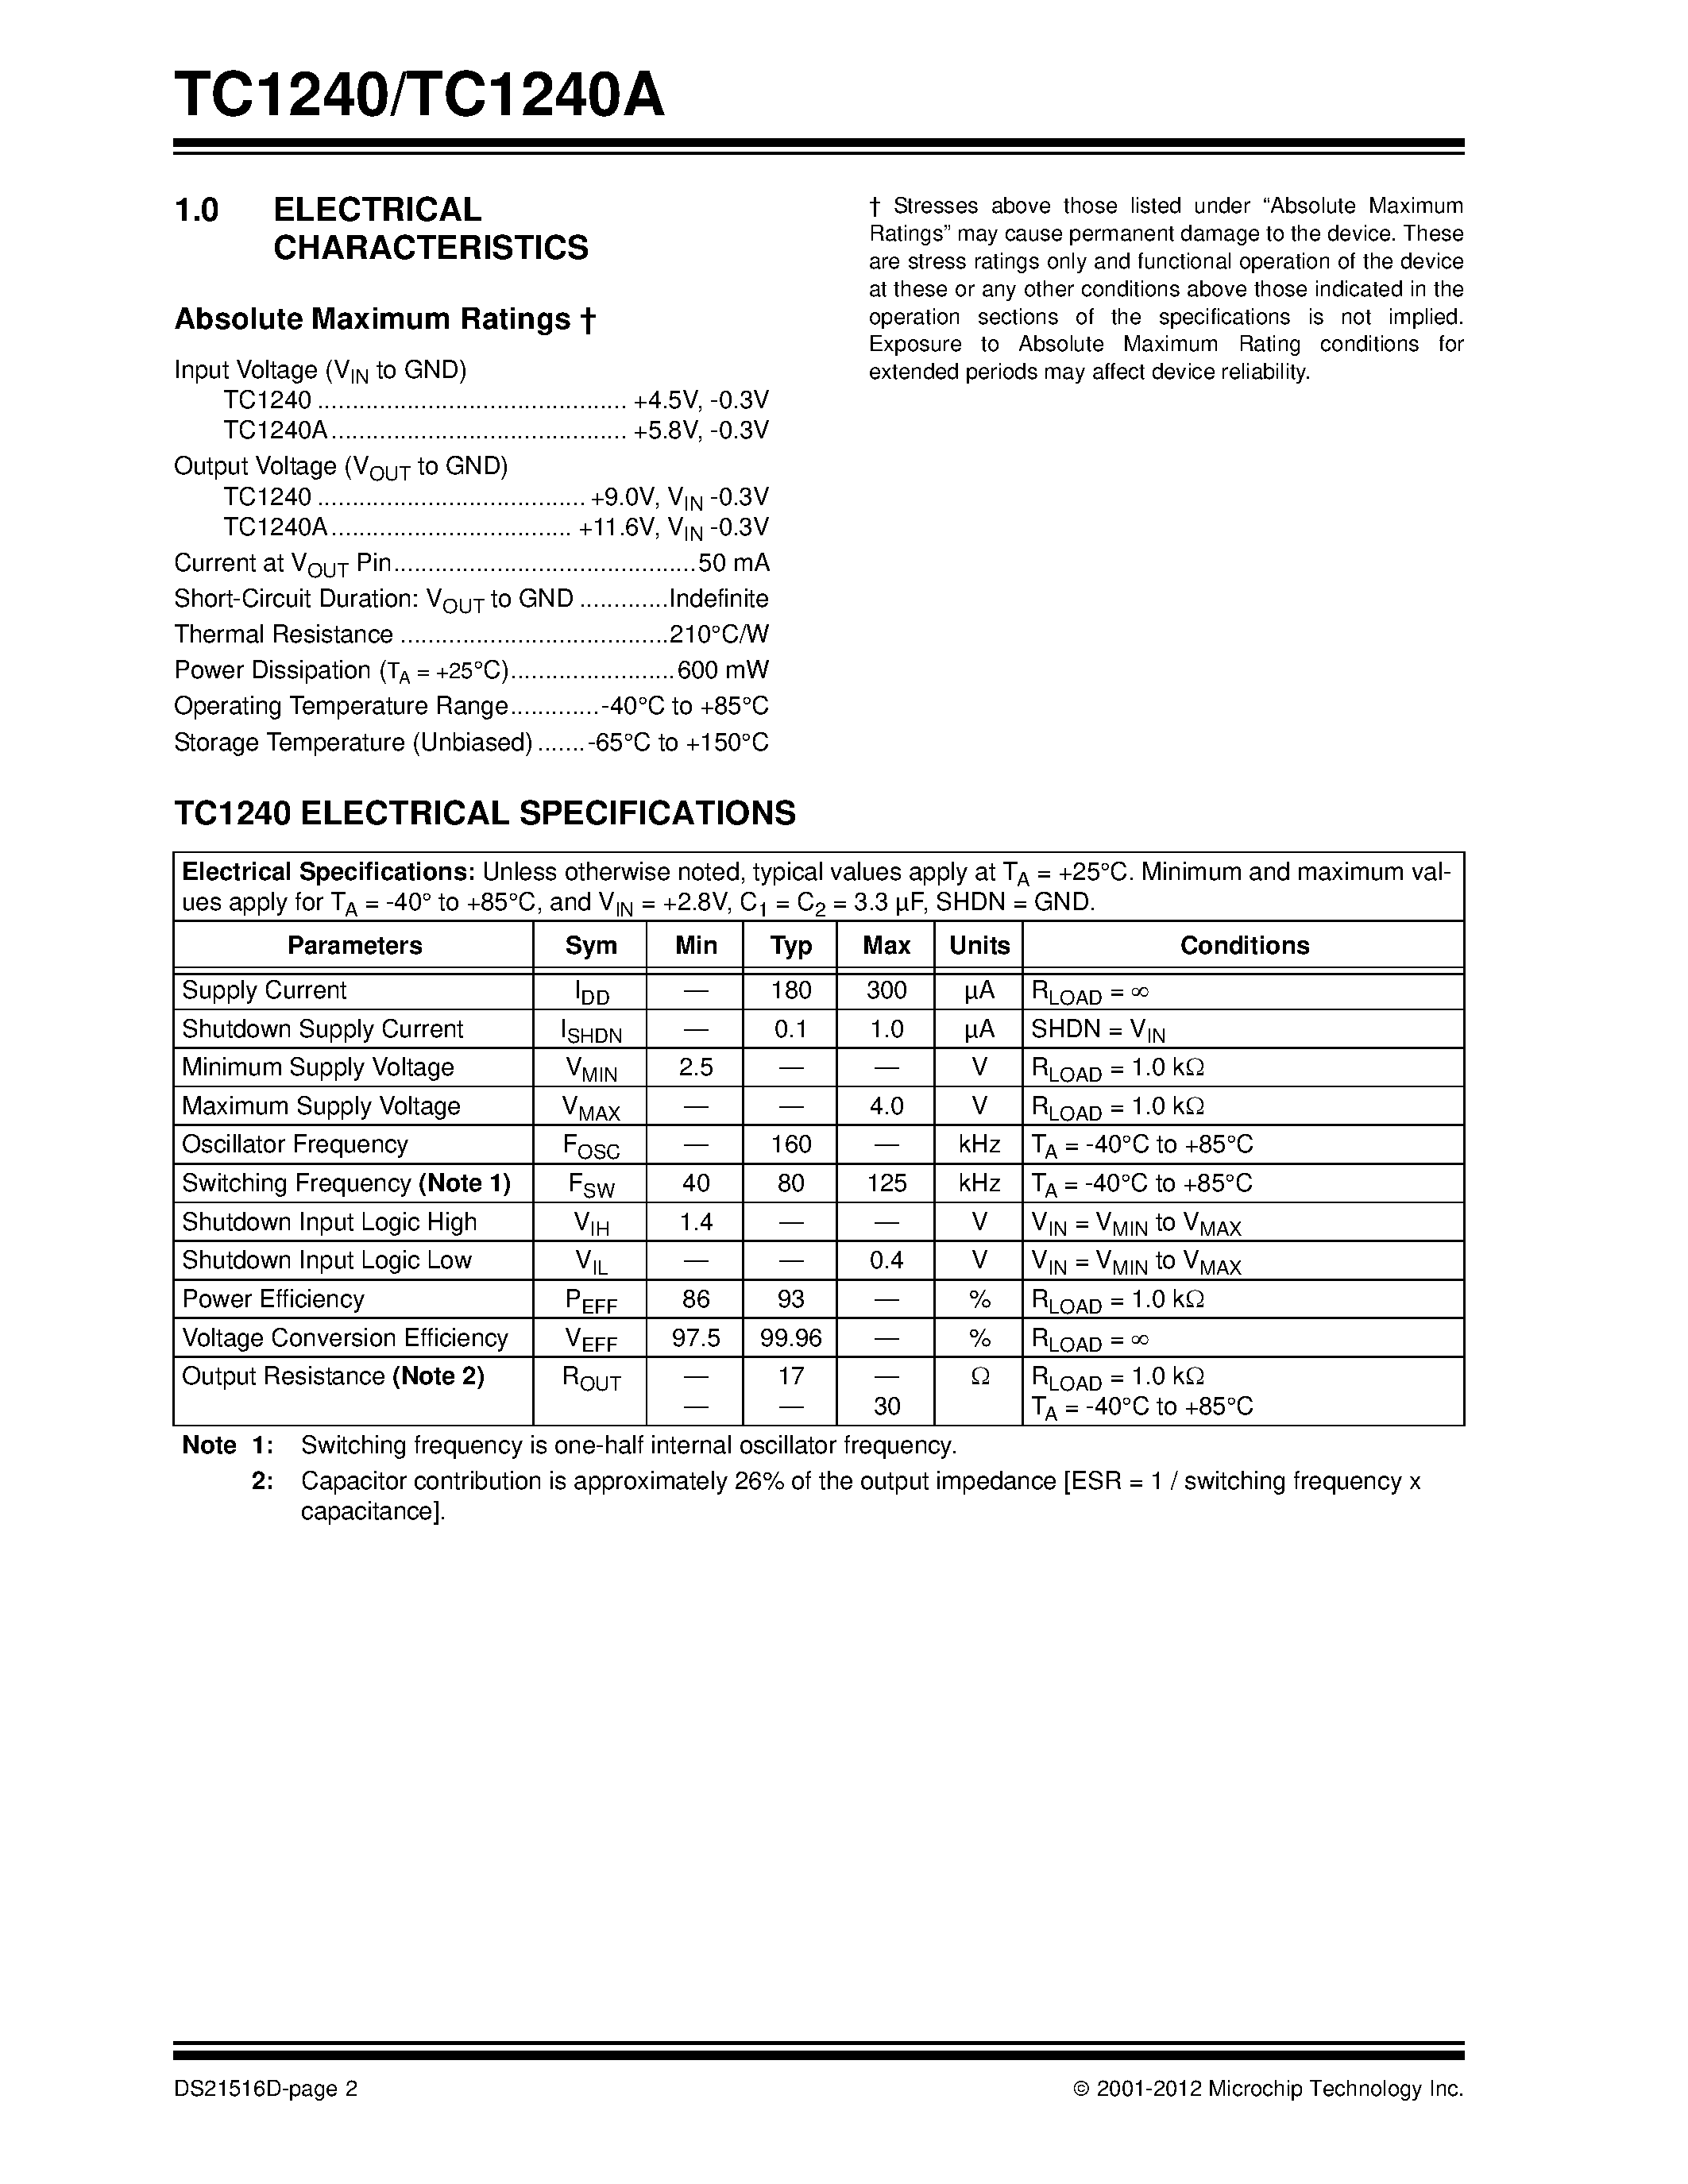 Datasheet TC1240A - page 2